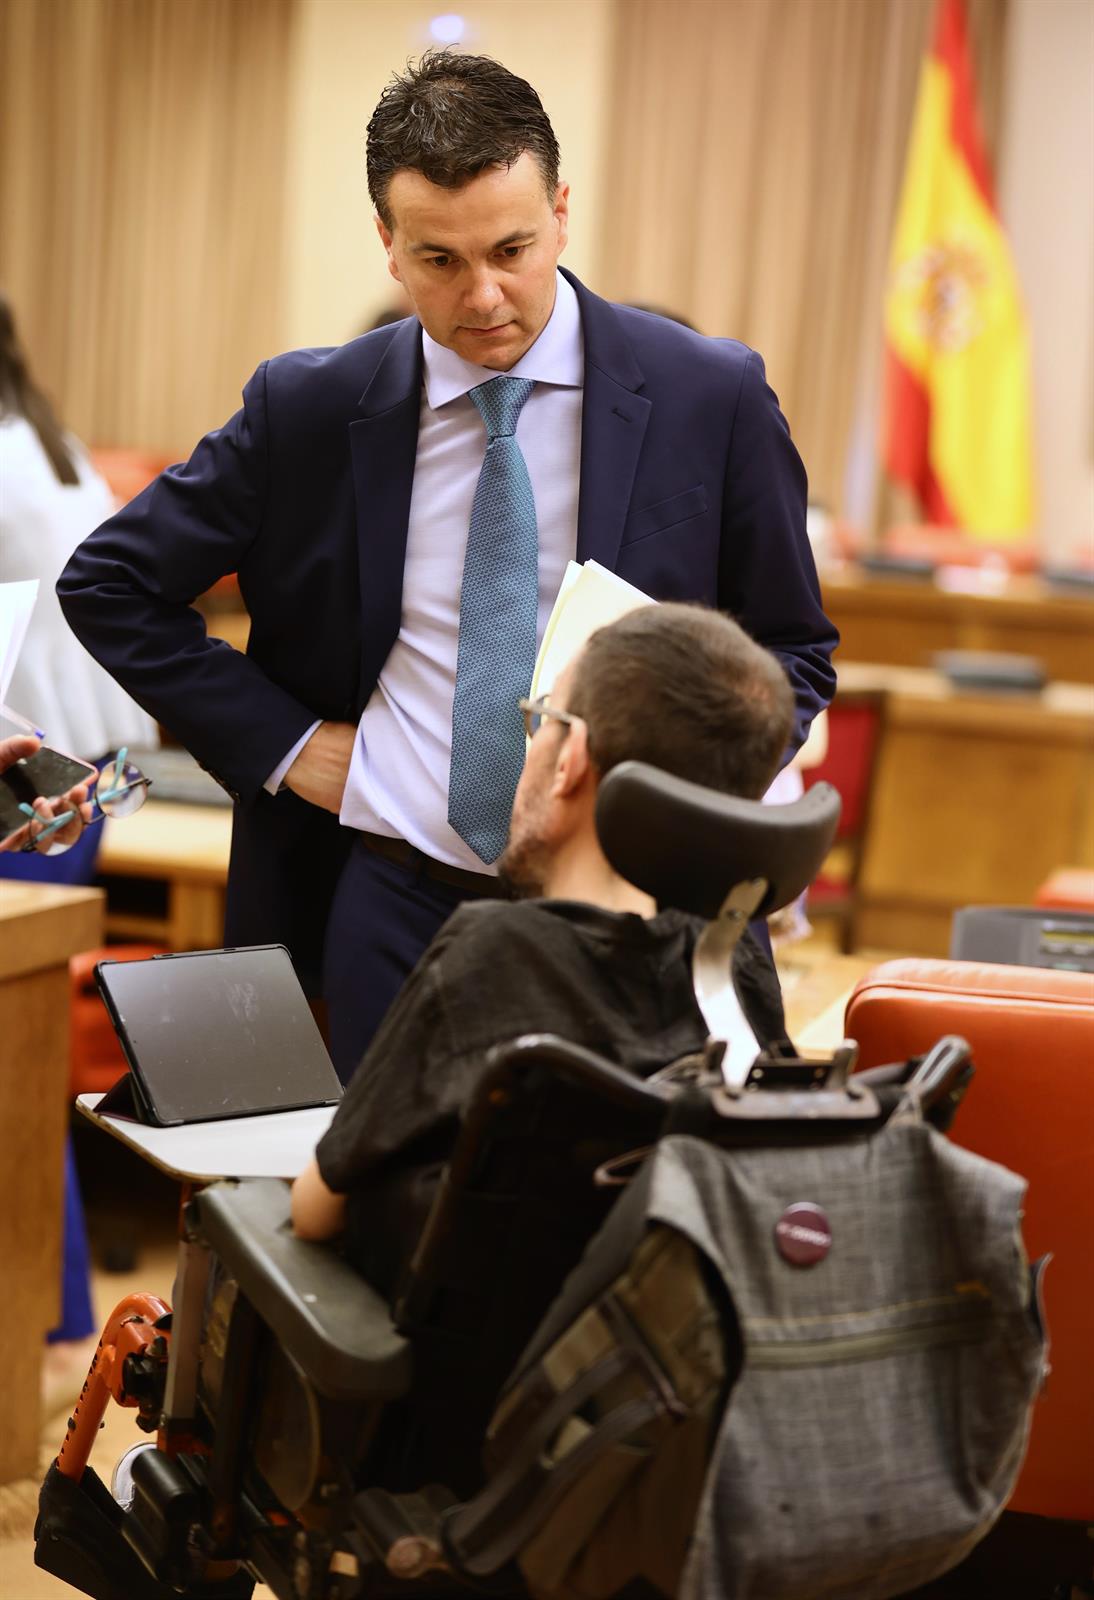 El portavoz del PSOE en el Congreso, Héctor Gómez (i), y el portavoz de Unidas Podemos en el Congreso, Pablo Echenique, conversan en una Junta de Portavoces en el Congreso de los Diputados, a 10 de mayo de 2022, en Madrid (España).